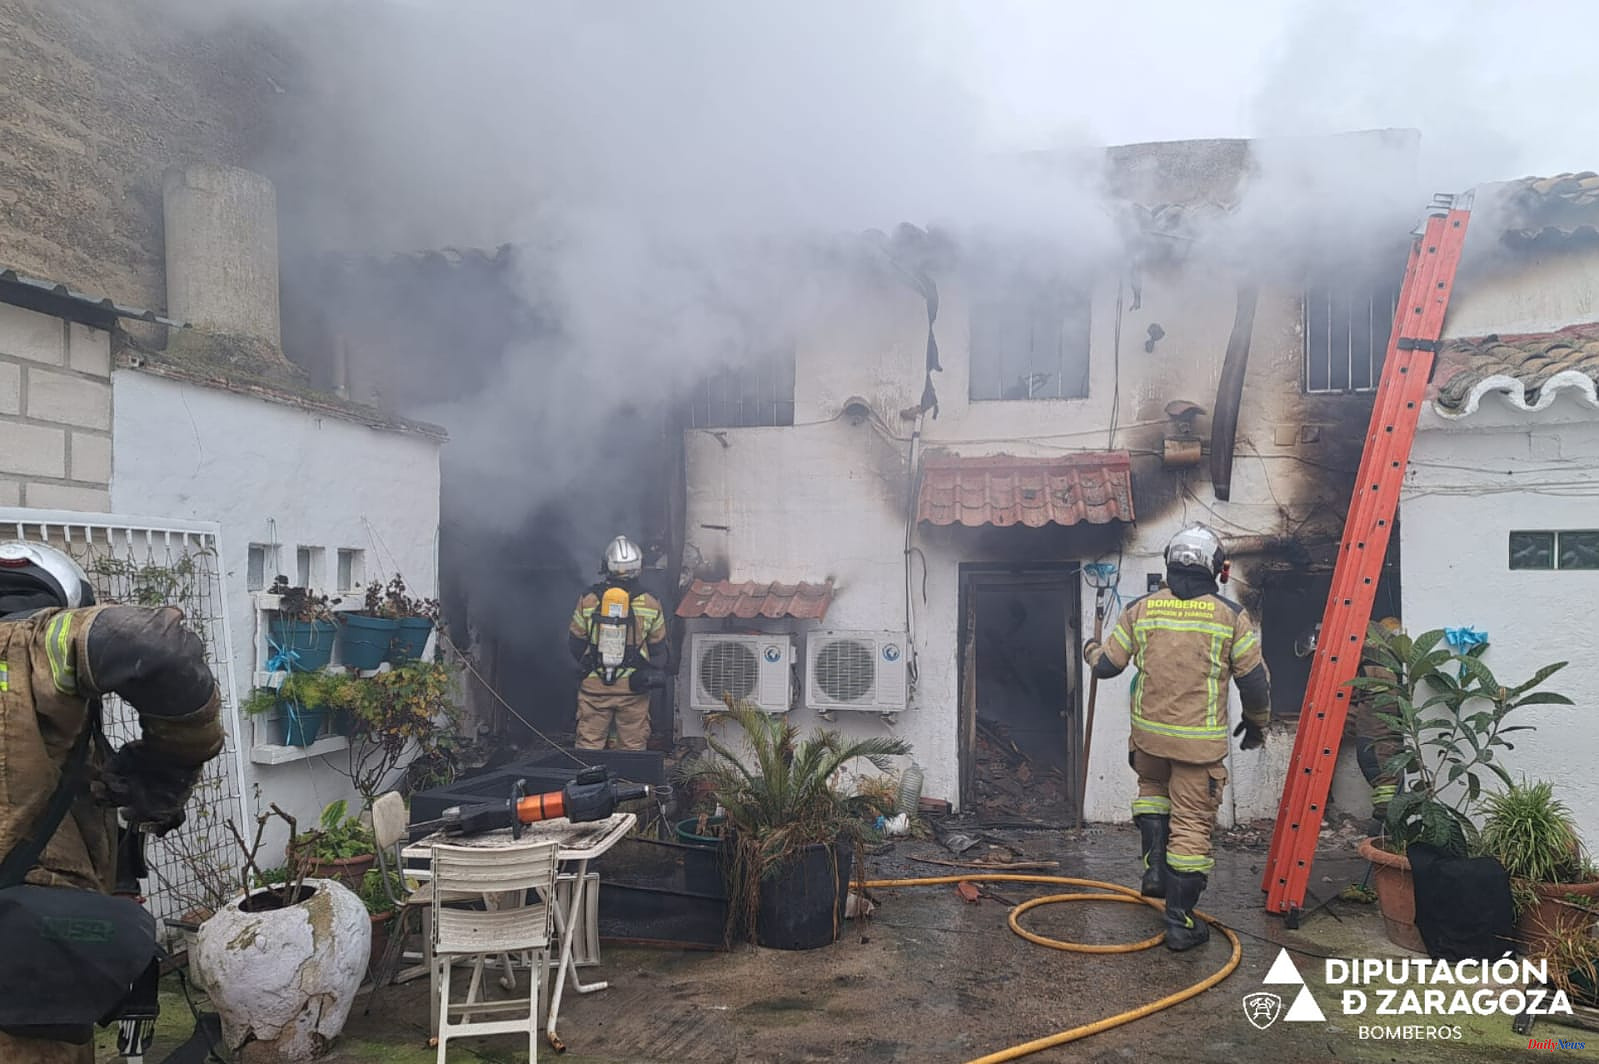 Spain Two people die in a house fire in Cabañas de Ebro (Zaragoza)